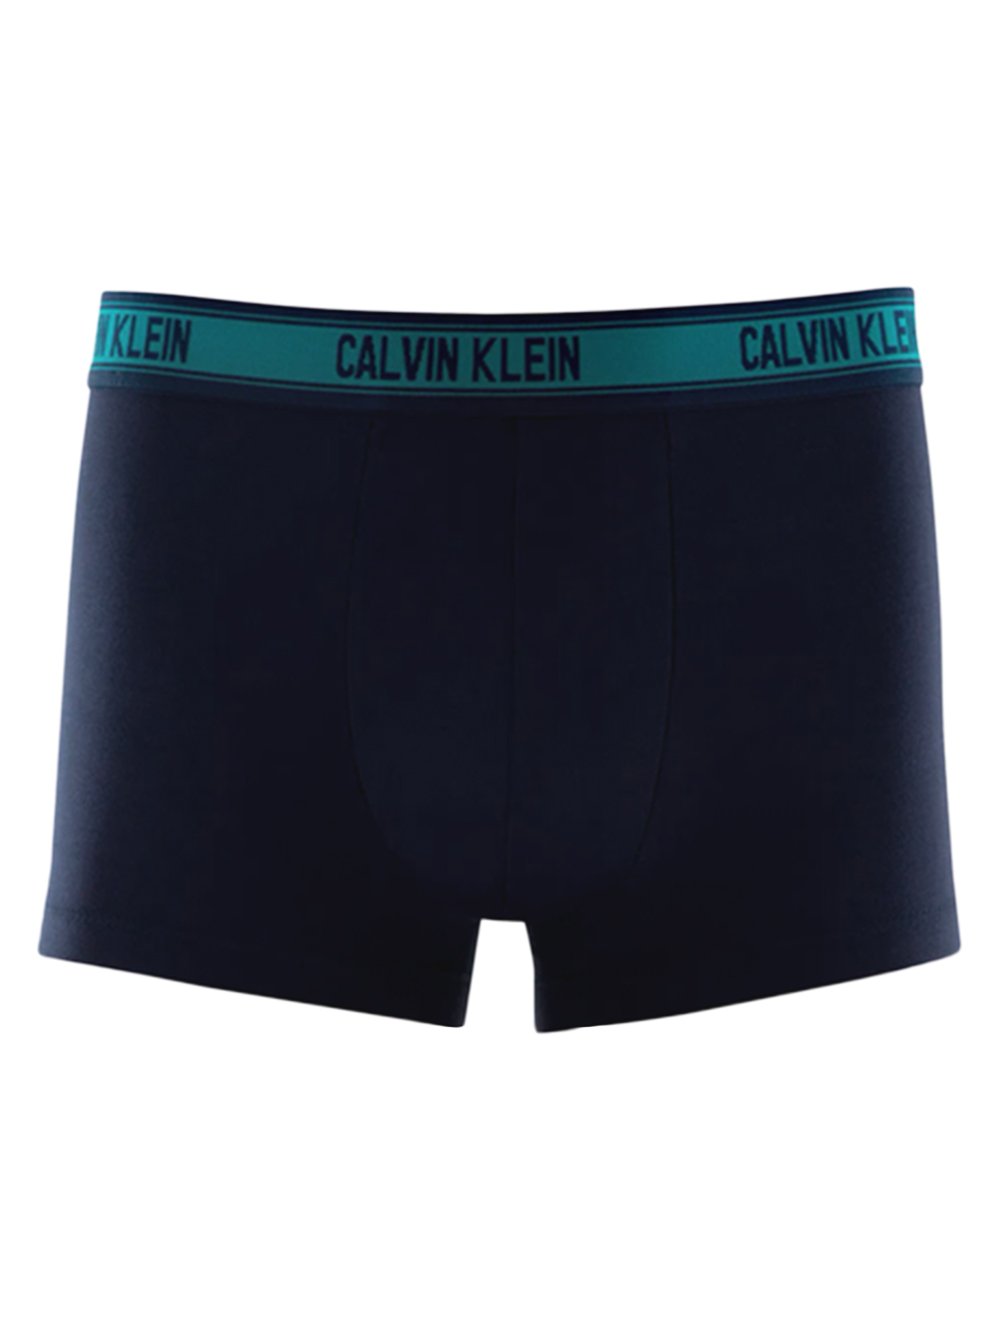 Kit 2pçs Cueca Calvin Klein Underwear Slip Logo Azul-Marinho